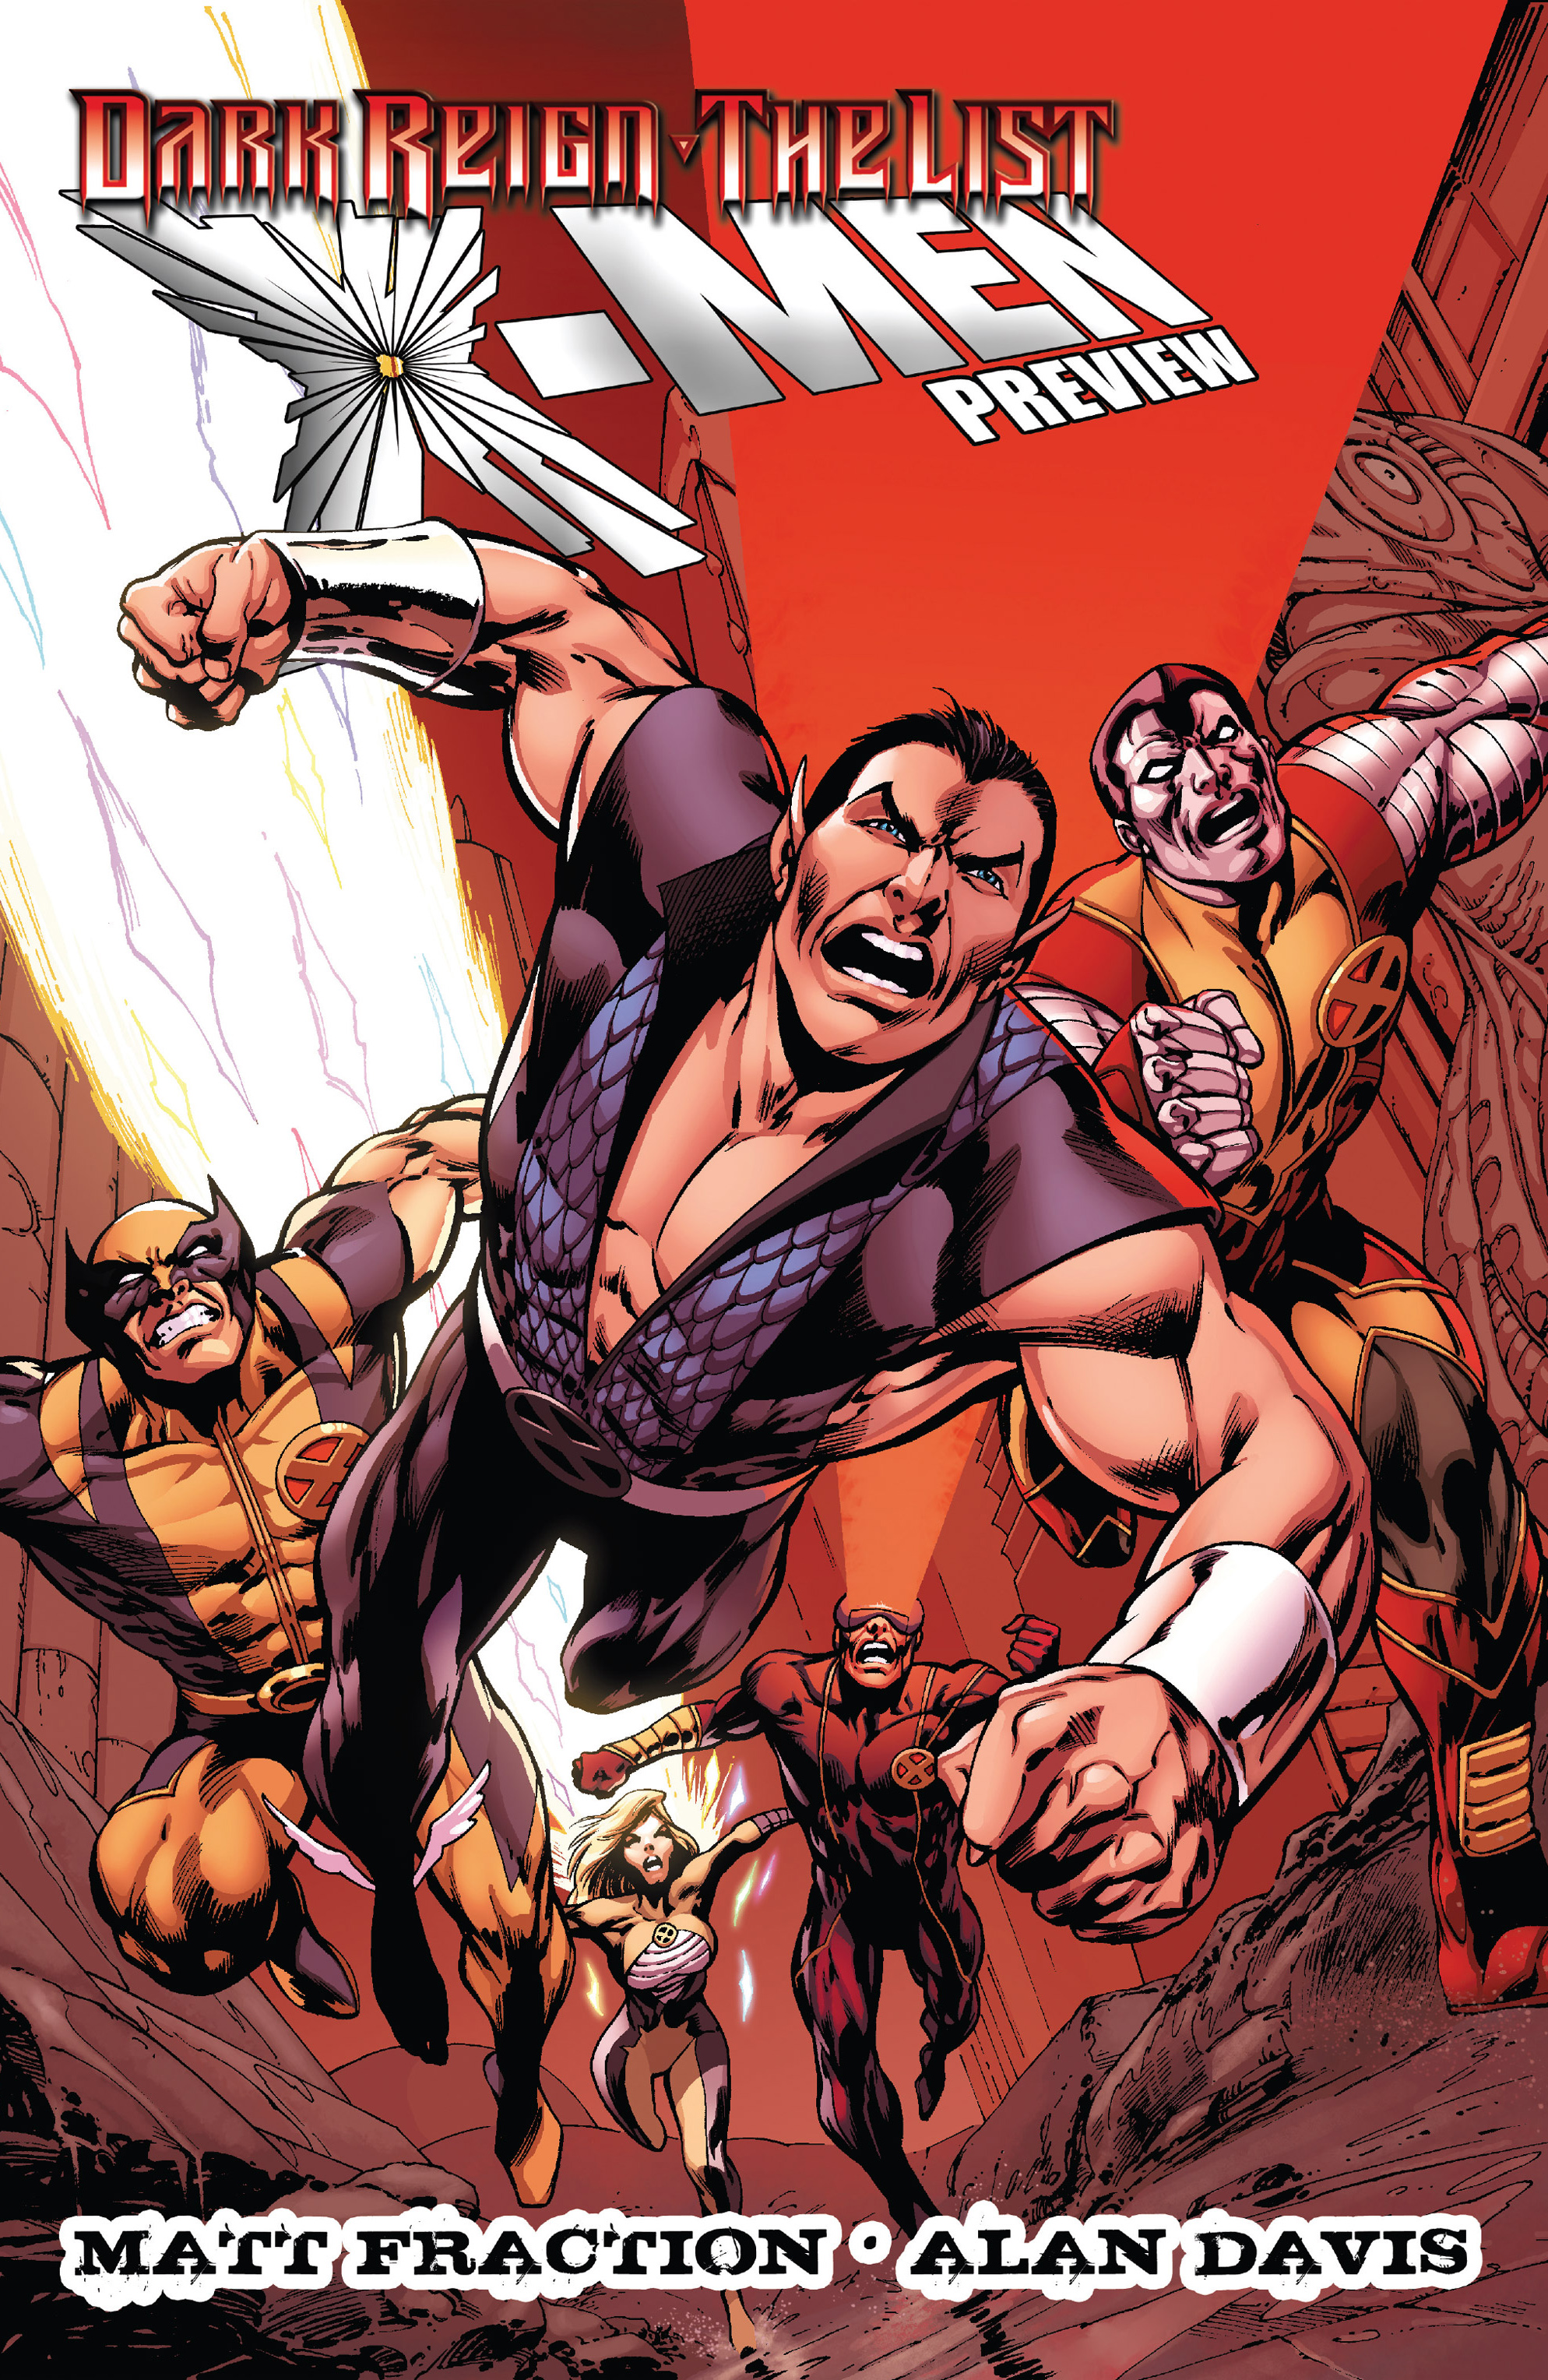 Read online Dark Reign: The List - Avengers comic -  Issue # Full - 33